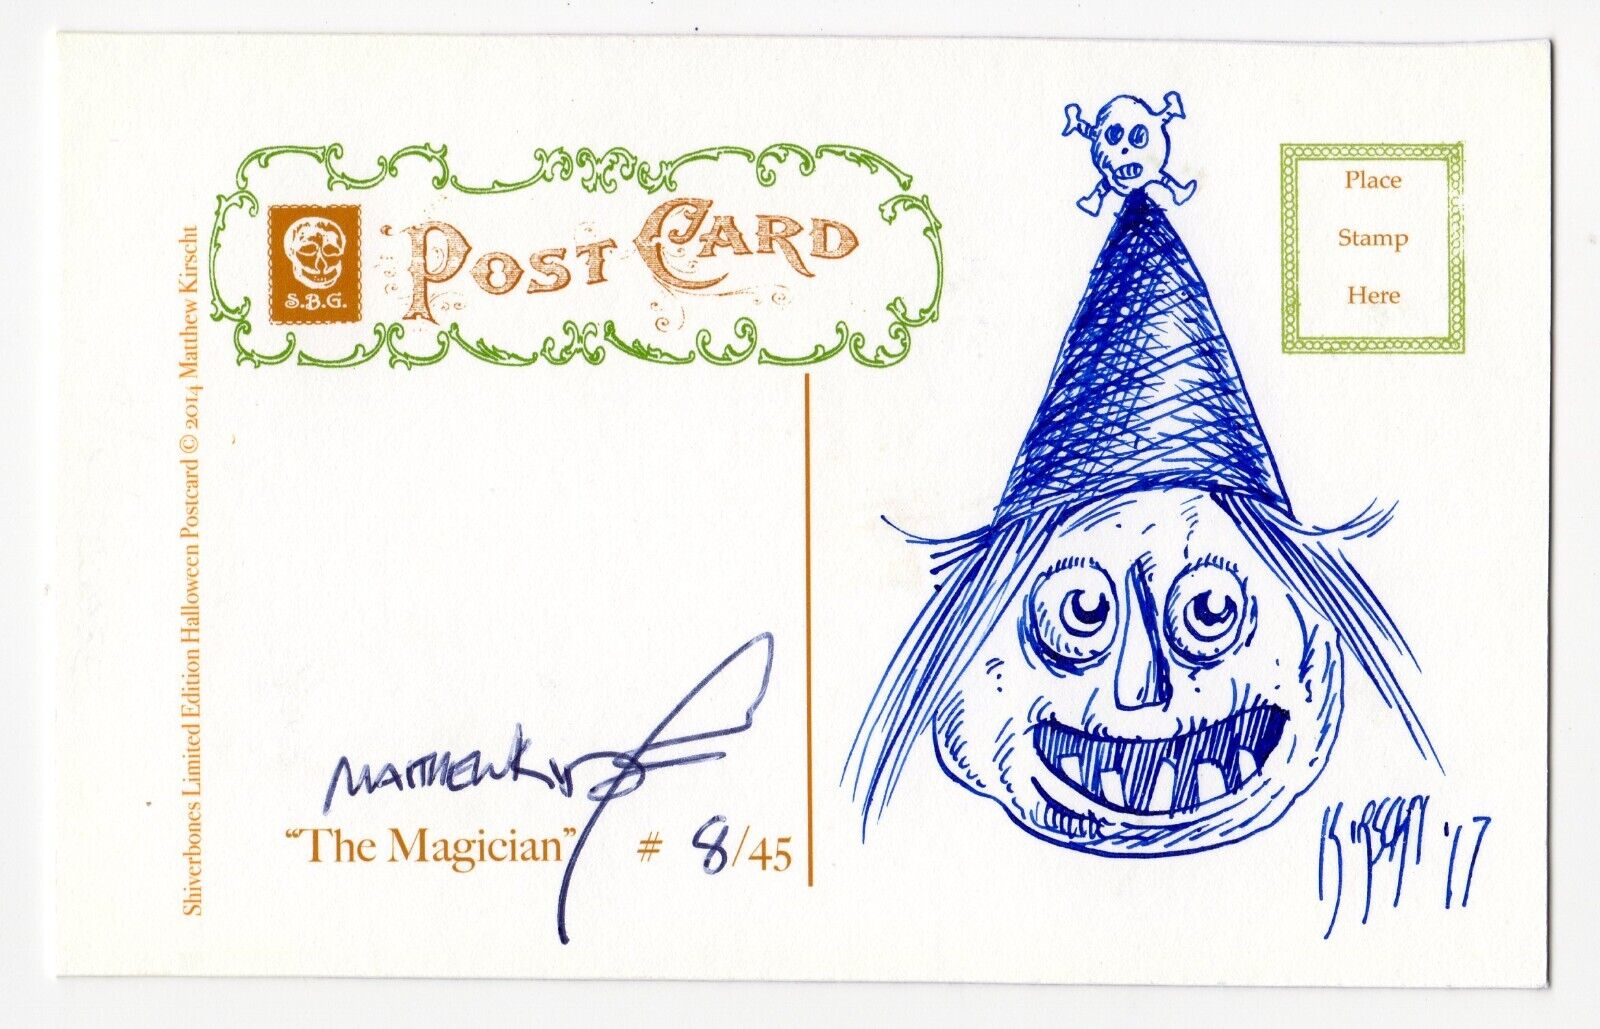 Halloween Postcard Matthew Kirscht 2014 The Magician 8/45 B/W Sketch